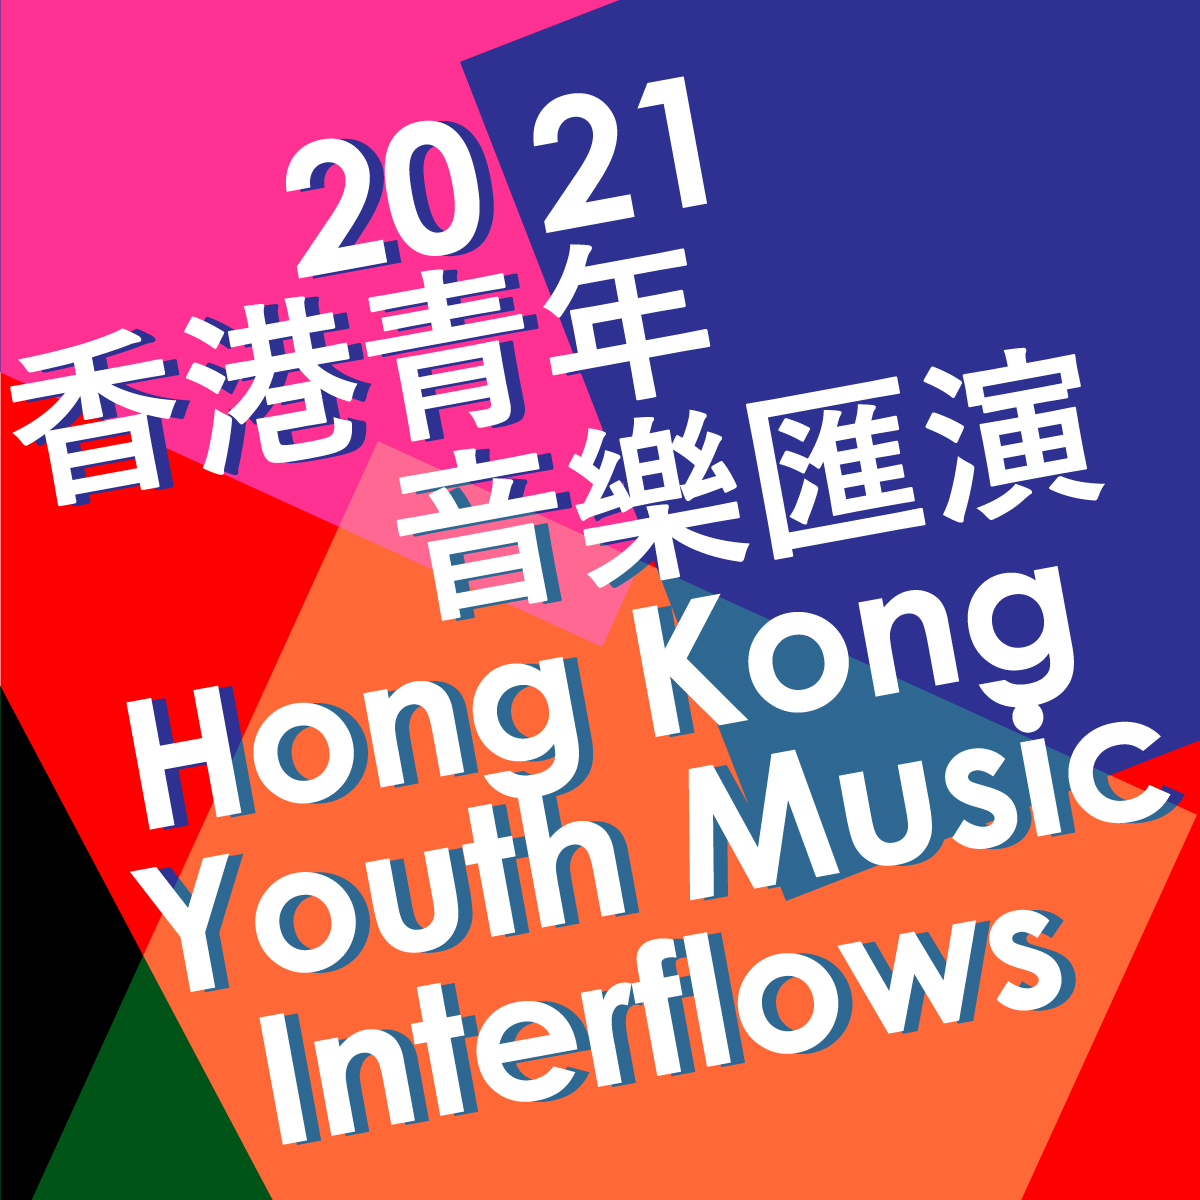 2021 Hong Kong Youth Music Interflows